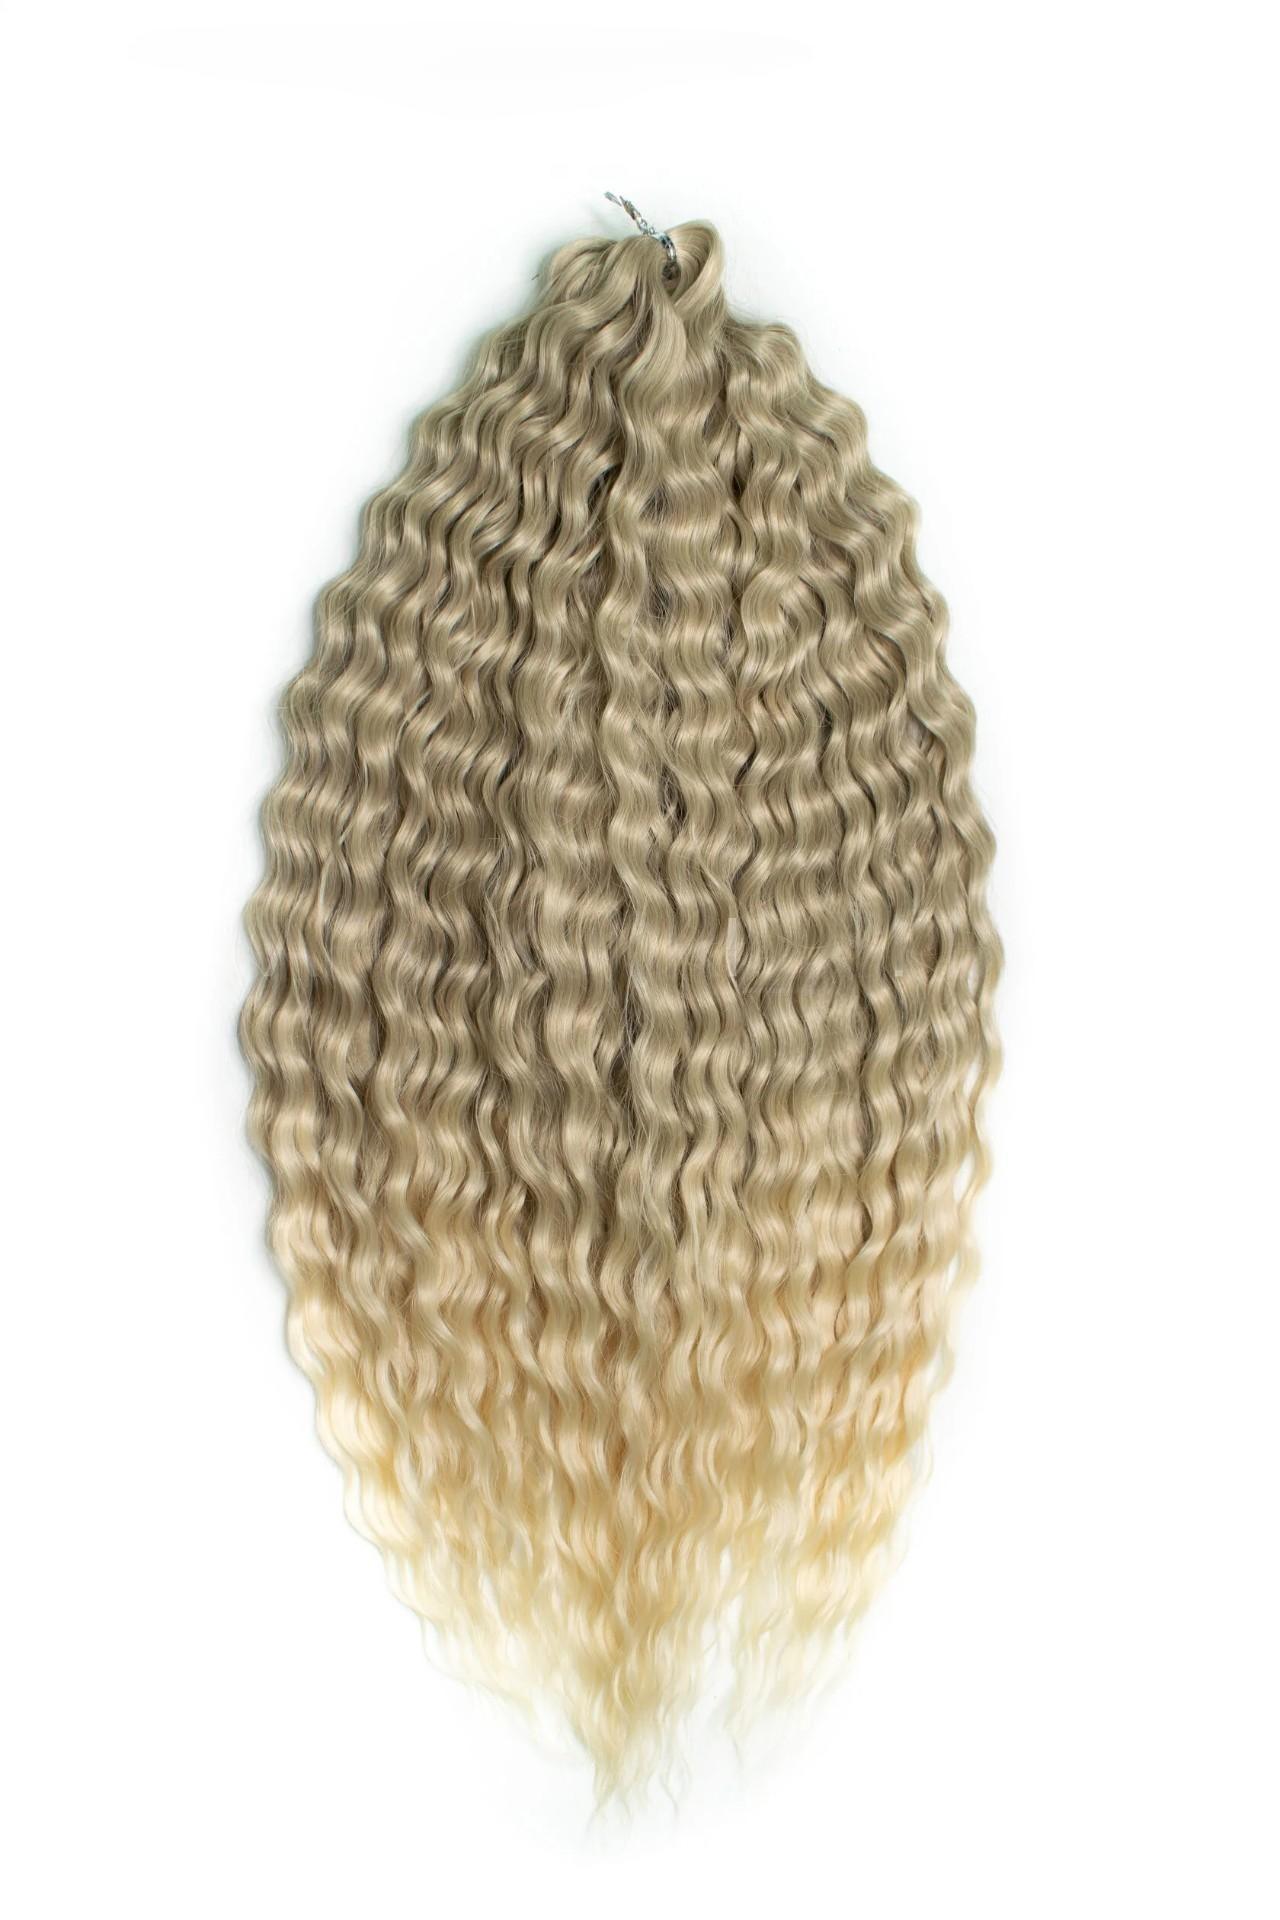 Афрокудри для плетения волос Ariel T16 613 светло-русый длина 55см вес 300г arduino от азов программирования до создания практических устройств м белов